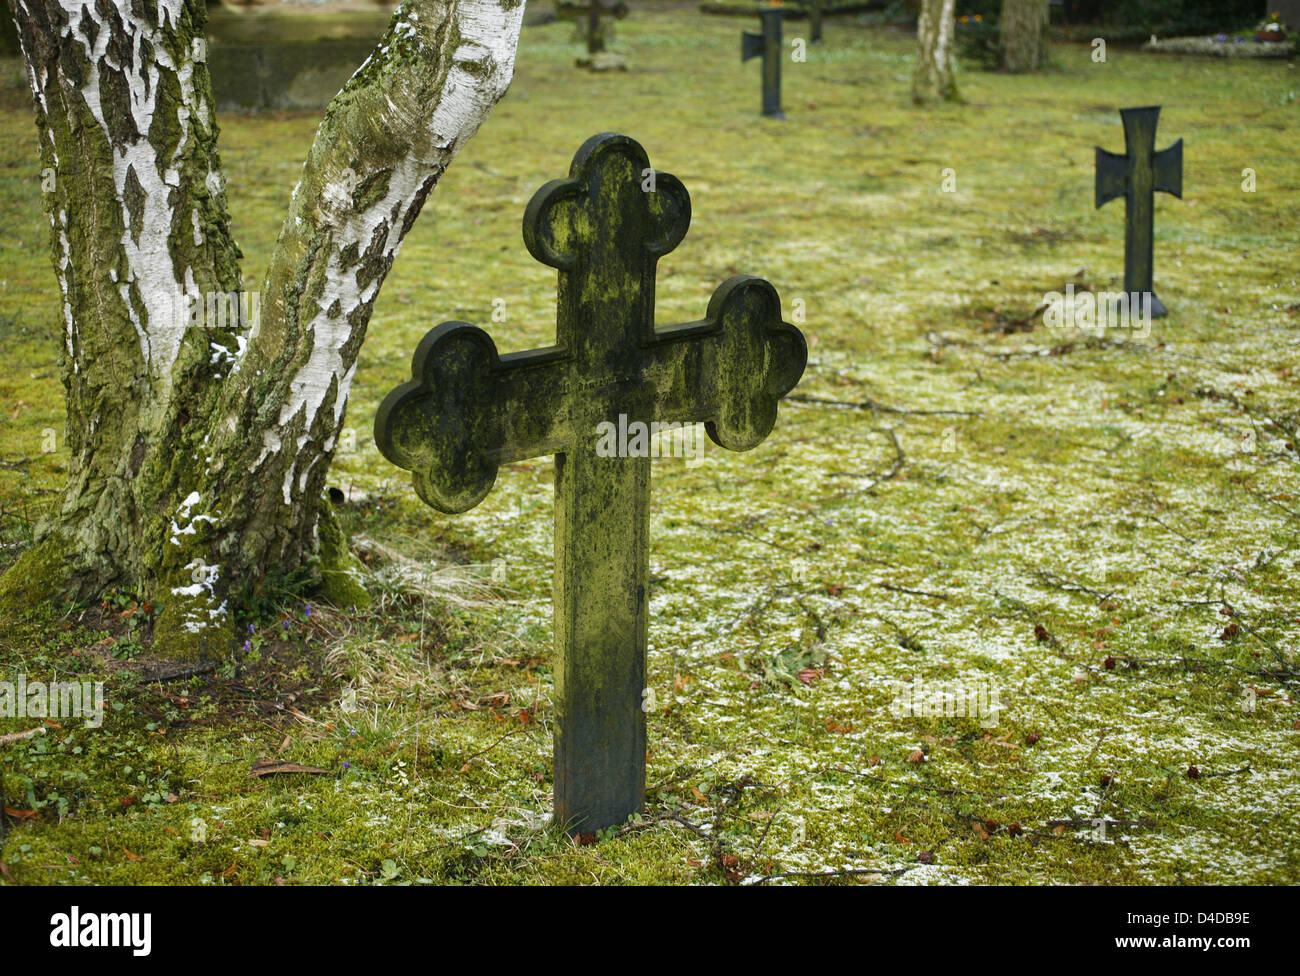 Moss ricoperta di croci di ferro sono raffigurato su un cimitero per i soldati in Francoforte sul Meno, Germania, 24 marzo 2008. Le croci commemorare i soldati che hanno perso la vita nelle guerre tra Francia e Germania nel XIX secolo. Foto: Wolfram Steinberg Foto Stock